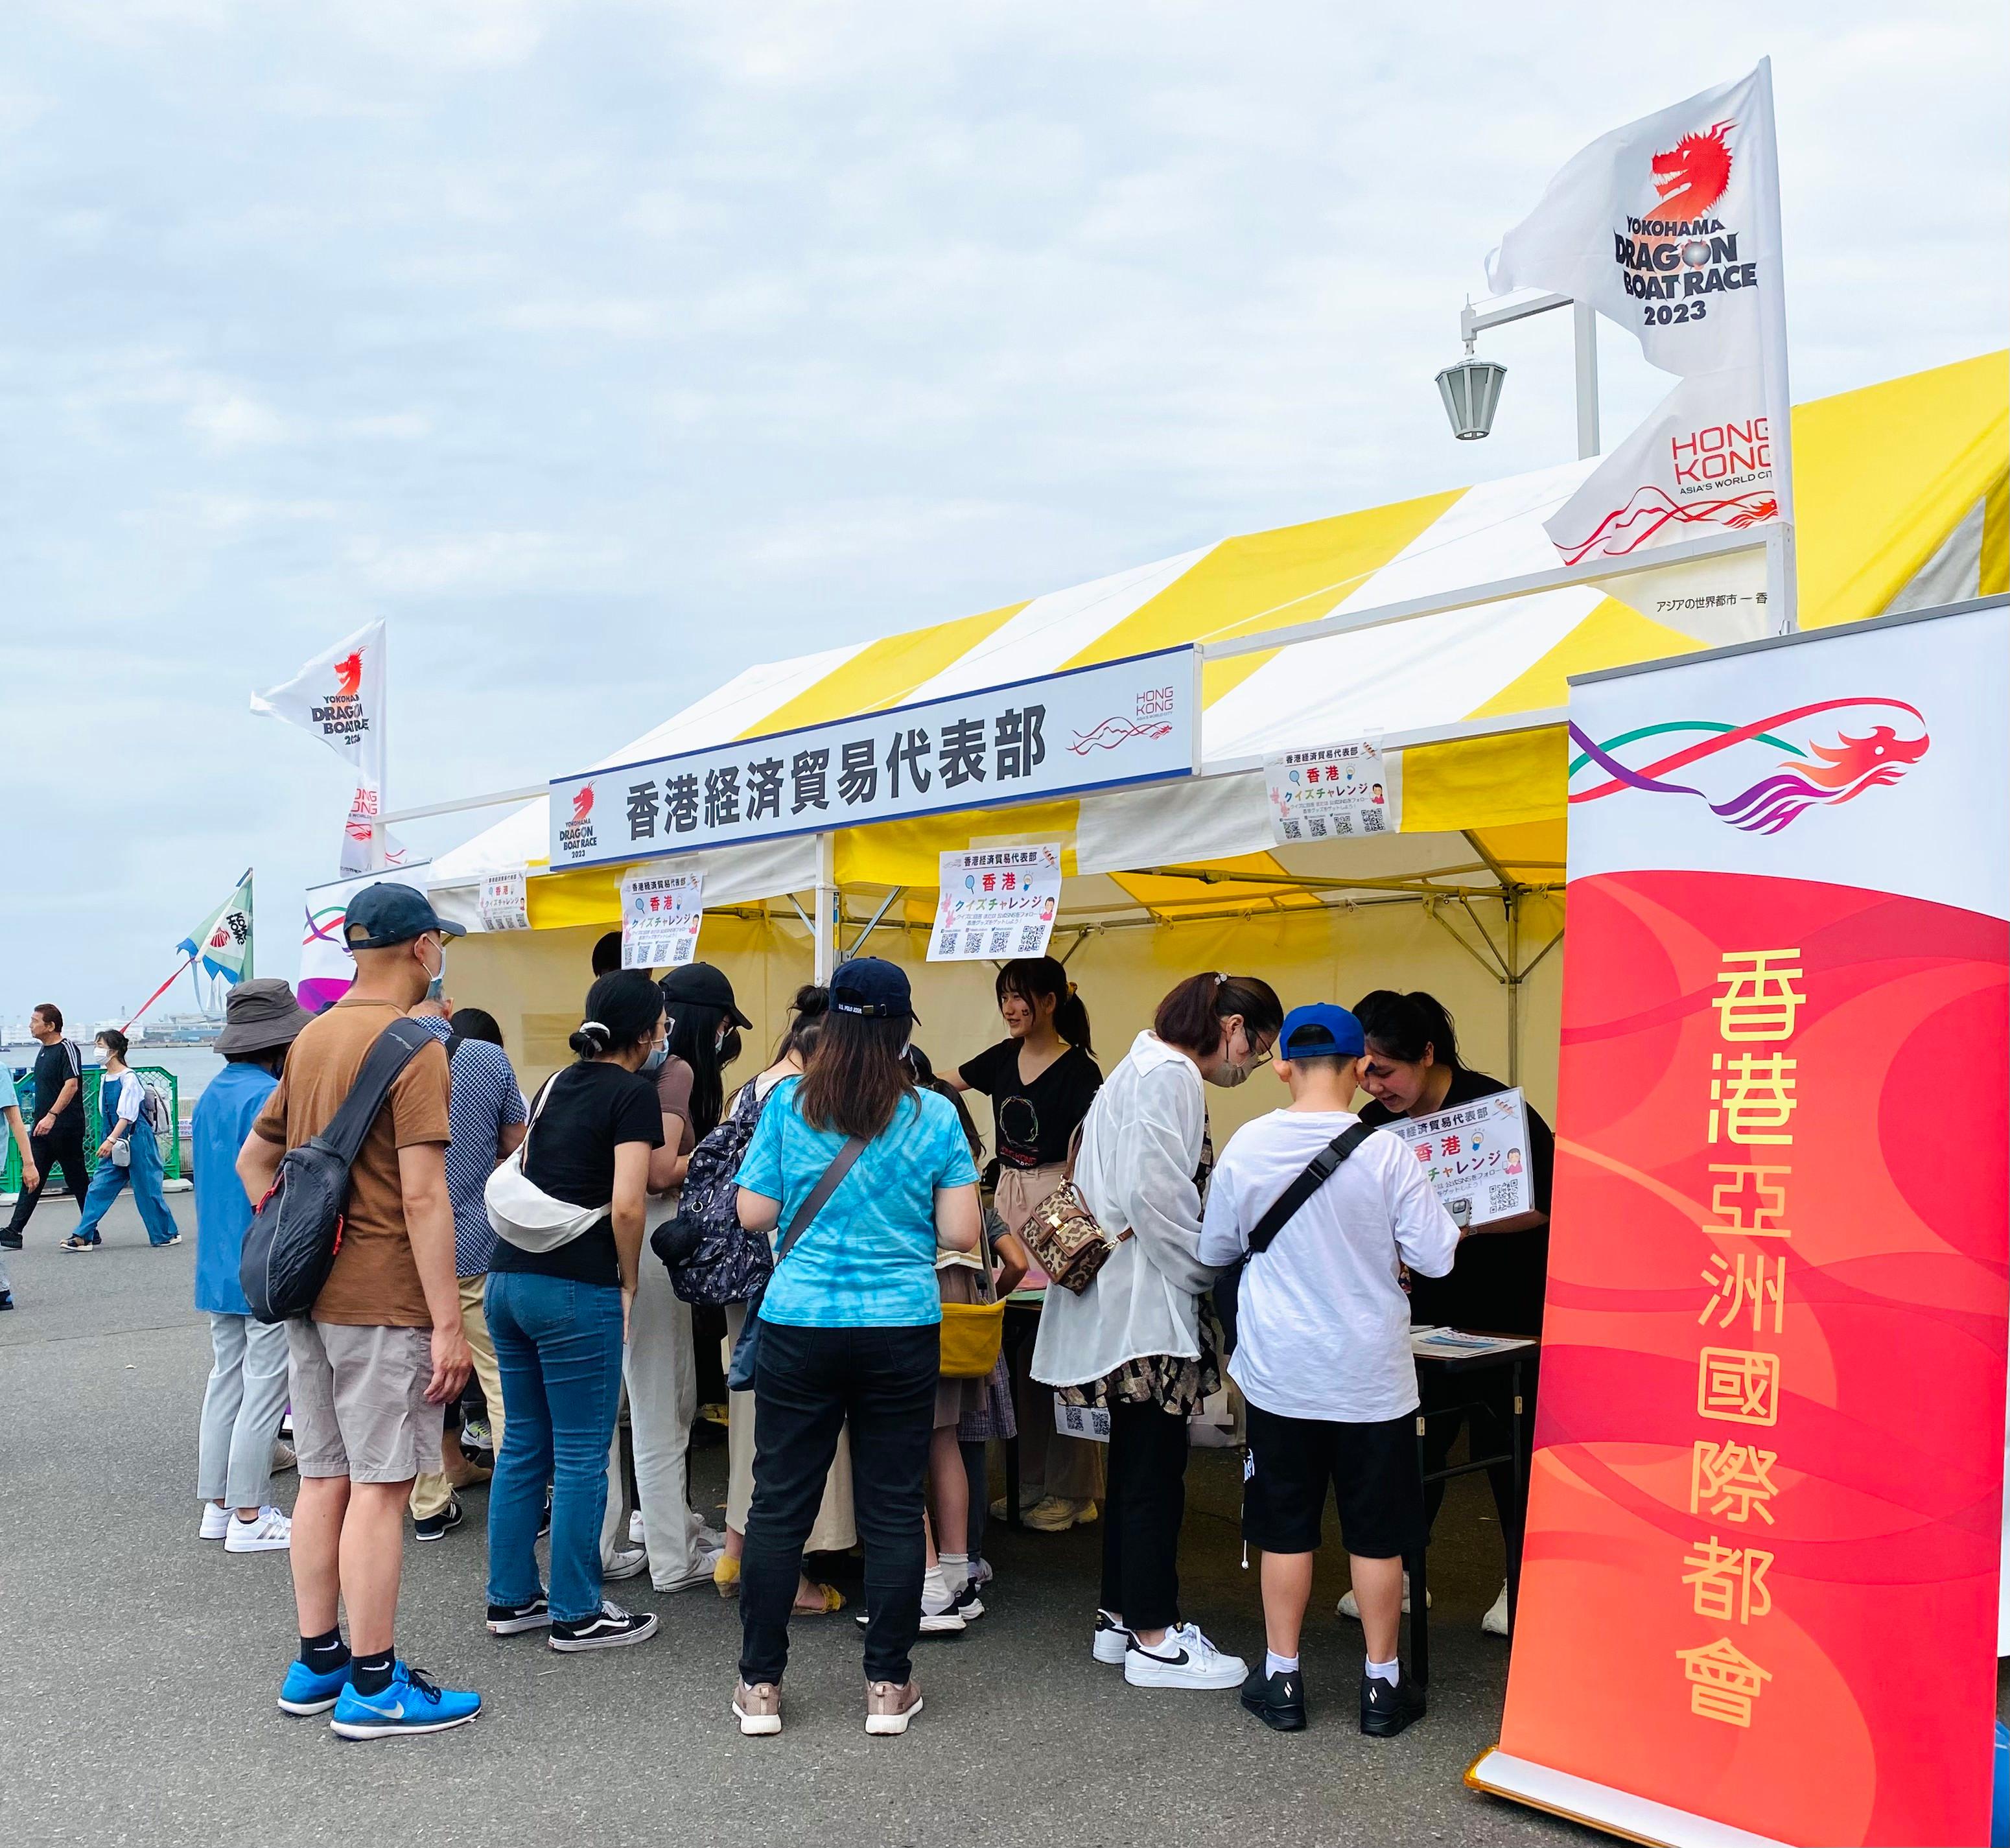 香港杯龙舟赛今日（六月四日）在日本横滨山下公园海旁举行。图示游人参观由香港驻东京经济贸易办事处设立的摊位。